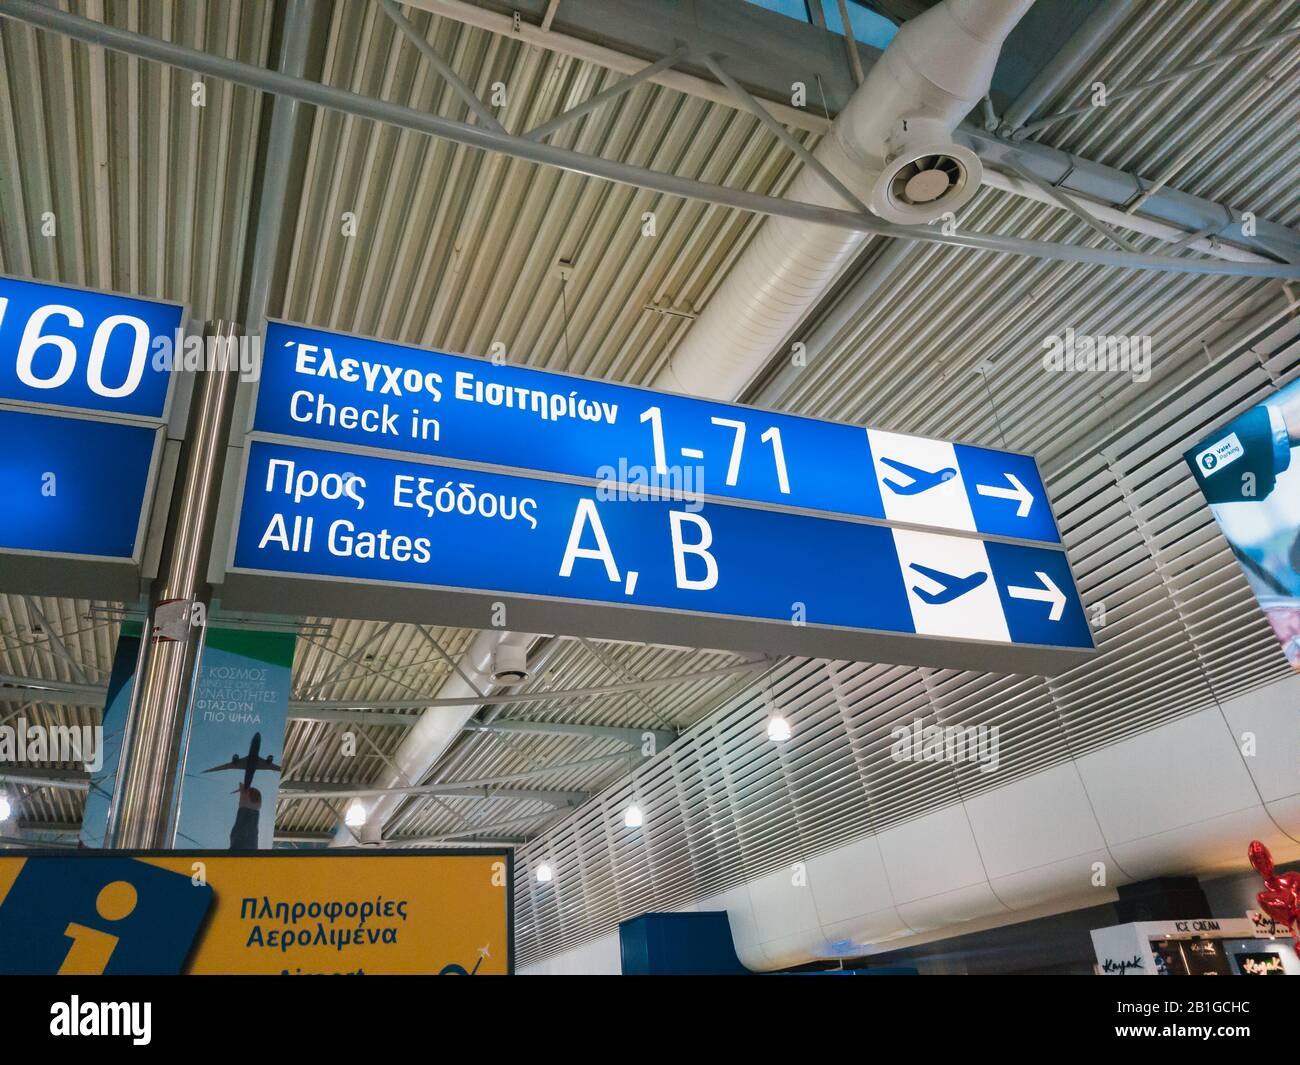 Atene, Grecia - Febbraio, 11 2020: Aeroporto Internazionale Di Atene Eleftherios Venizelos. Una bacheca informativa per i passeggeri, indicazioni stradali per i cancelli Foto Stock